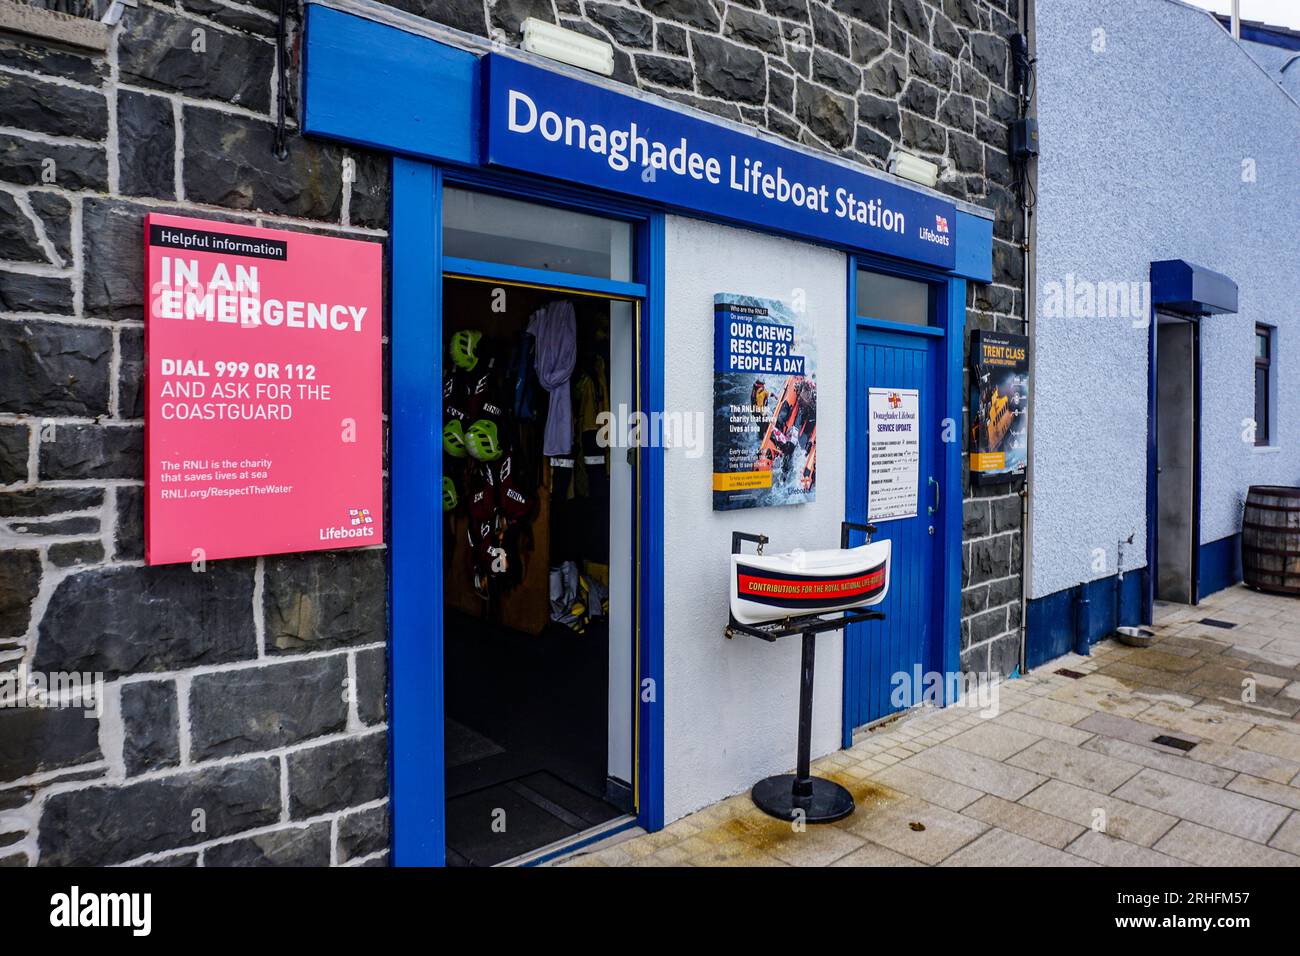 Donaghadee Lifeboat Station nella contea di Down, Irlanda del Nord, inclusa la nota cassetta di contribuzione a forma di nave. Foto Stock